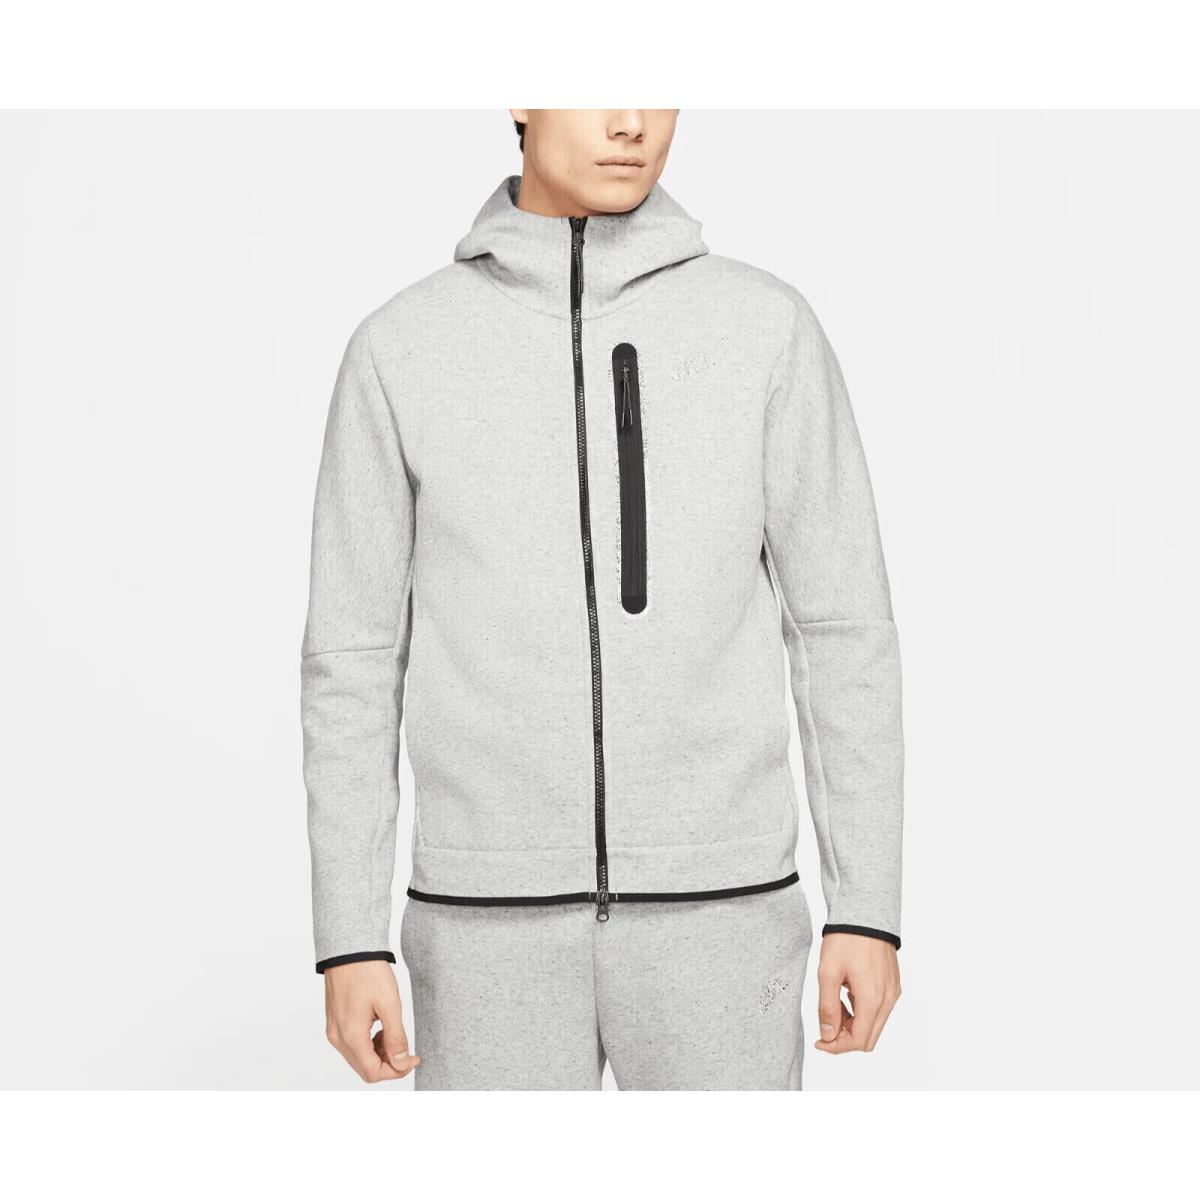 Nike Sportswear Tech Fleece Hoodie Full Zip Grey Mens DR9150 032 - Size Xxl